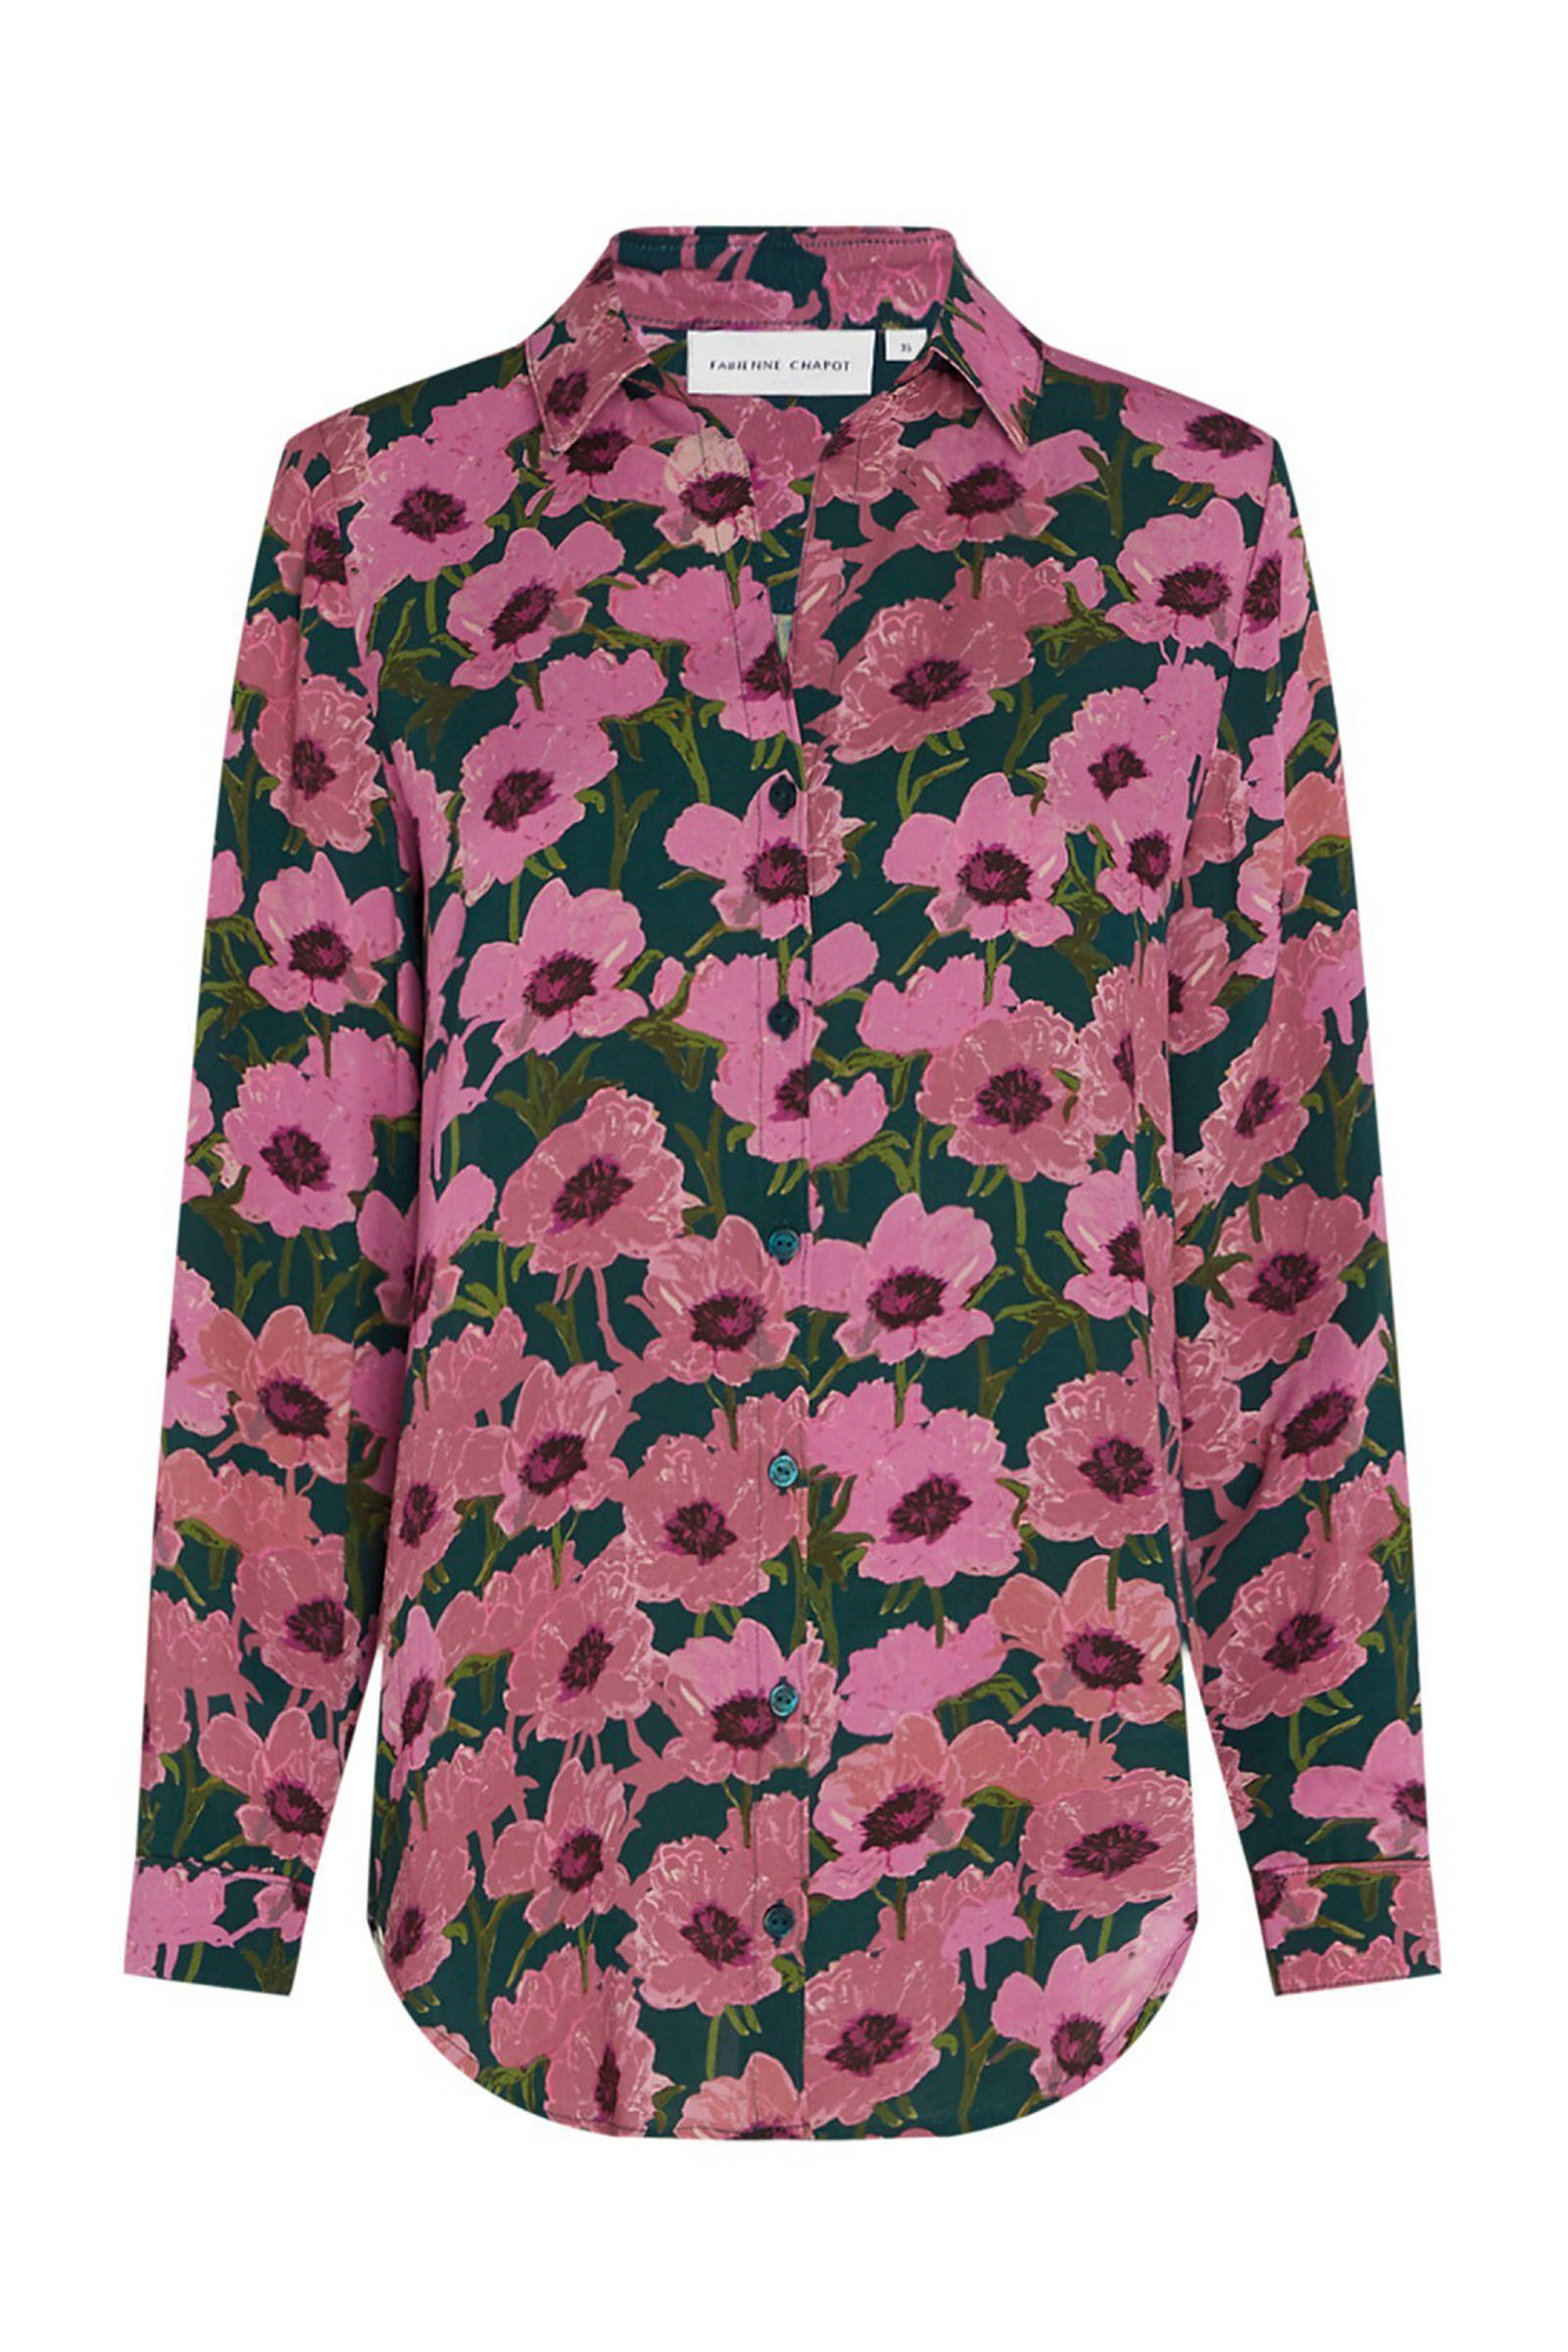 Fabienne Chapot gebloemde blouse Lily roze/ groen online kopen